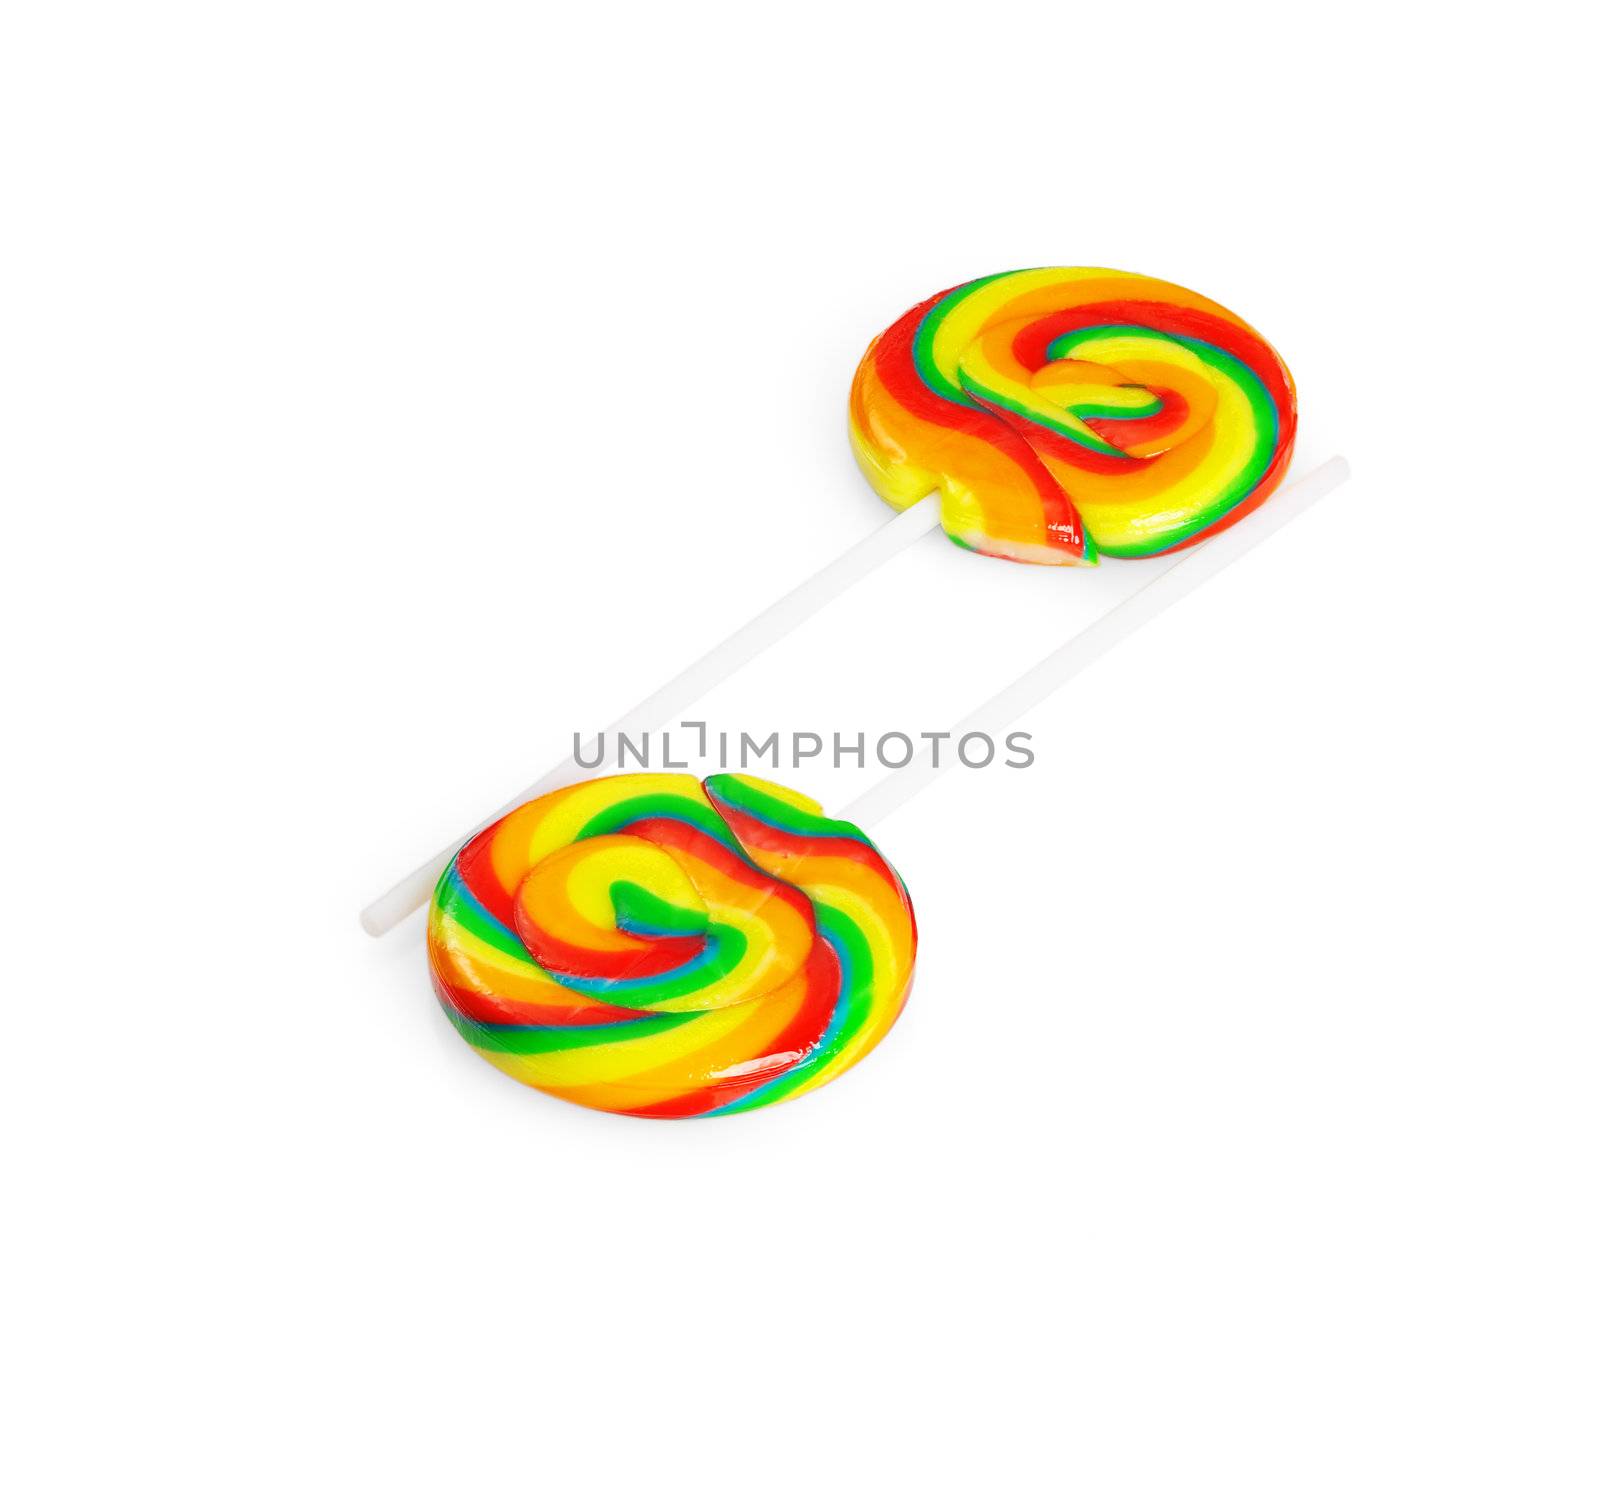 lollipops by keko64